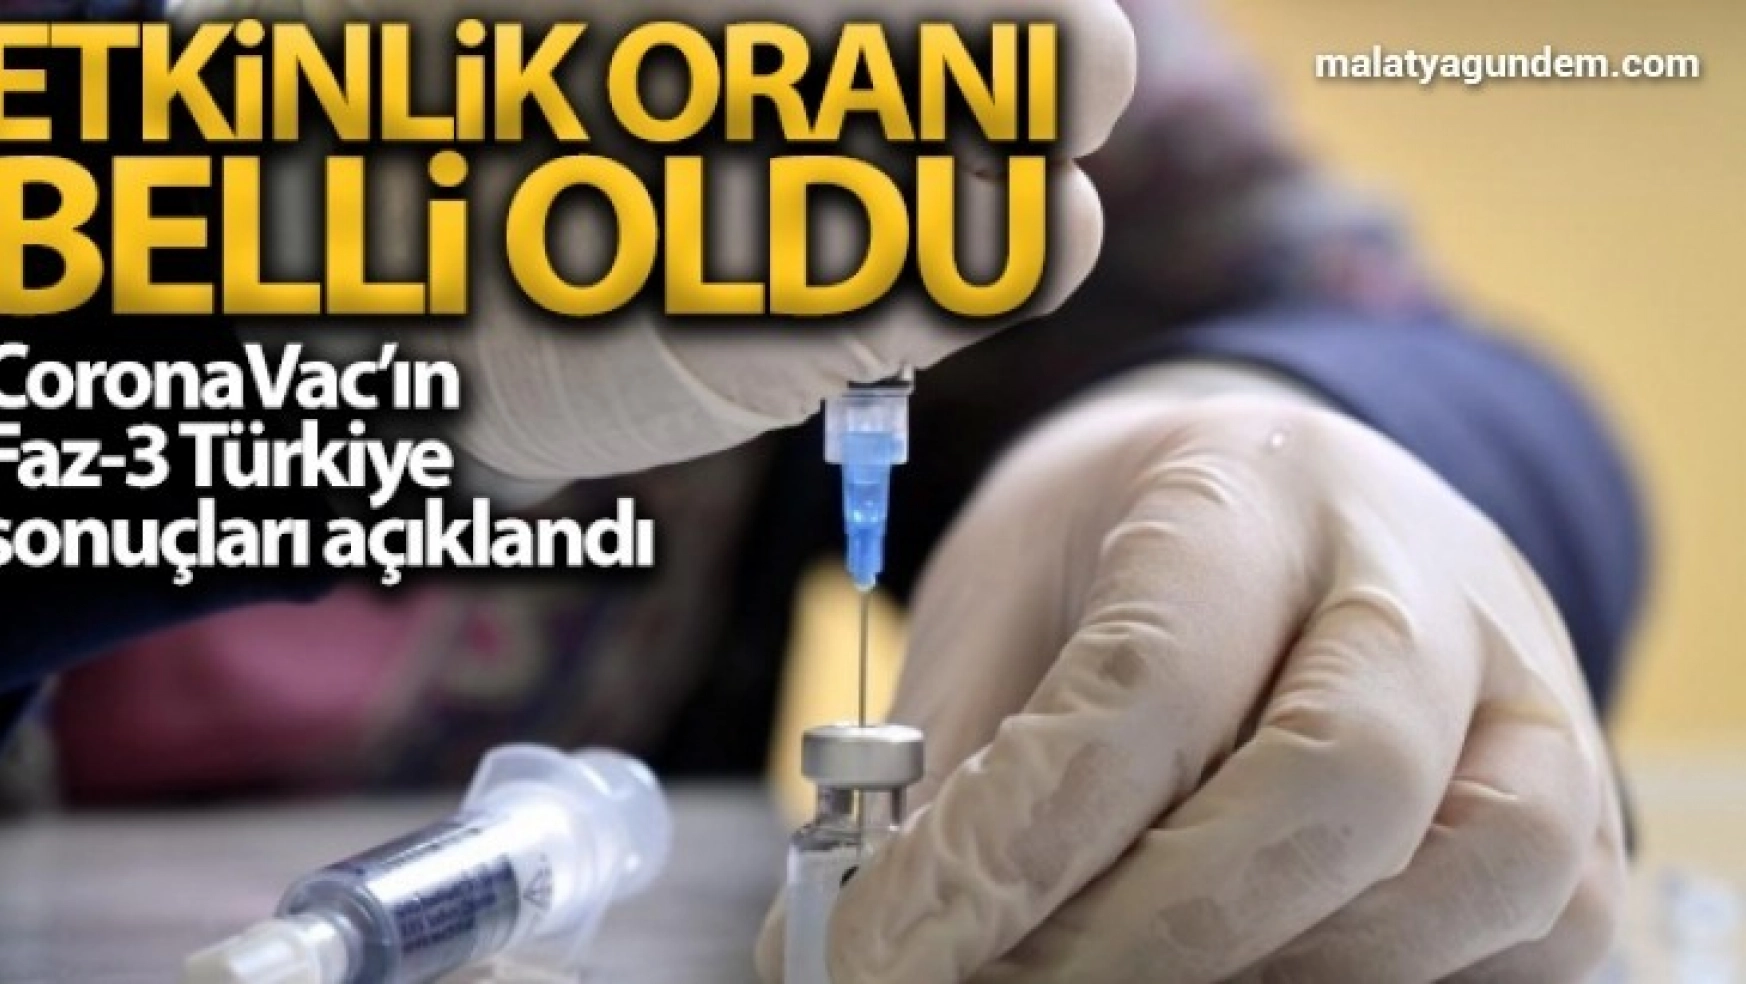 CoronaVac isimli Covid-19 aşısının Faz-3 Türkiye sonuçları açıklandı